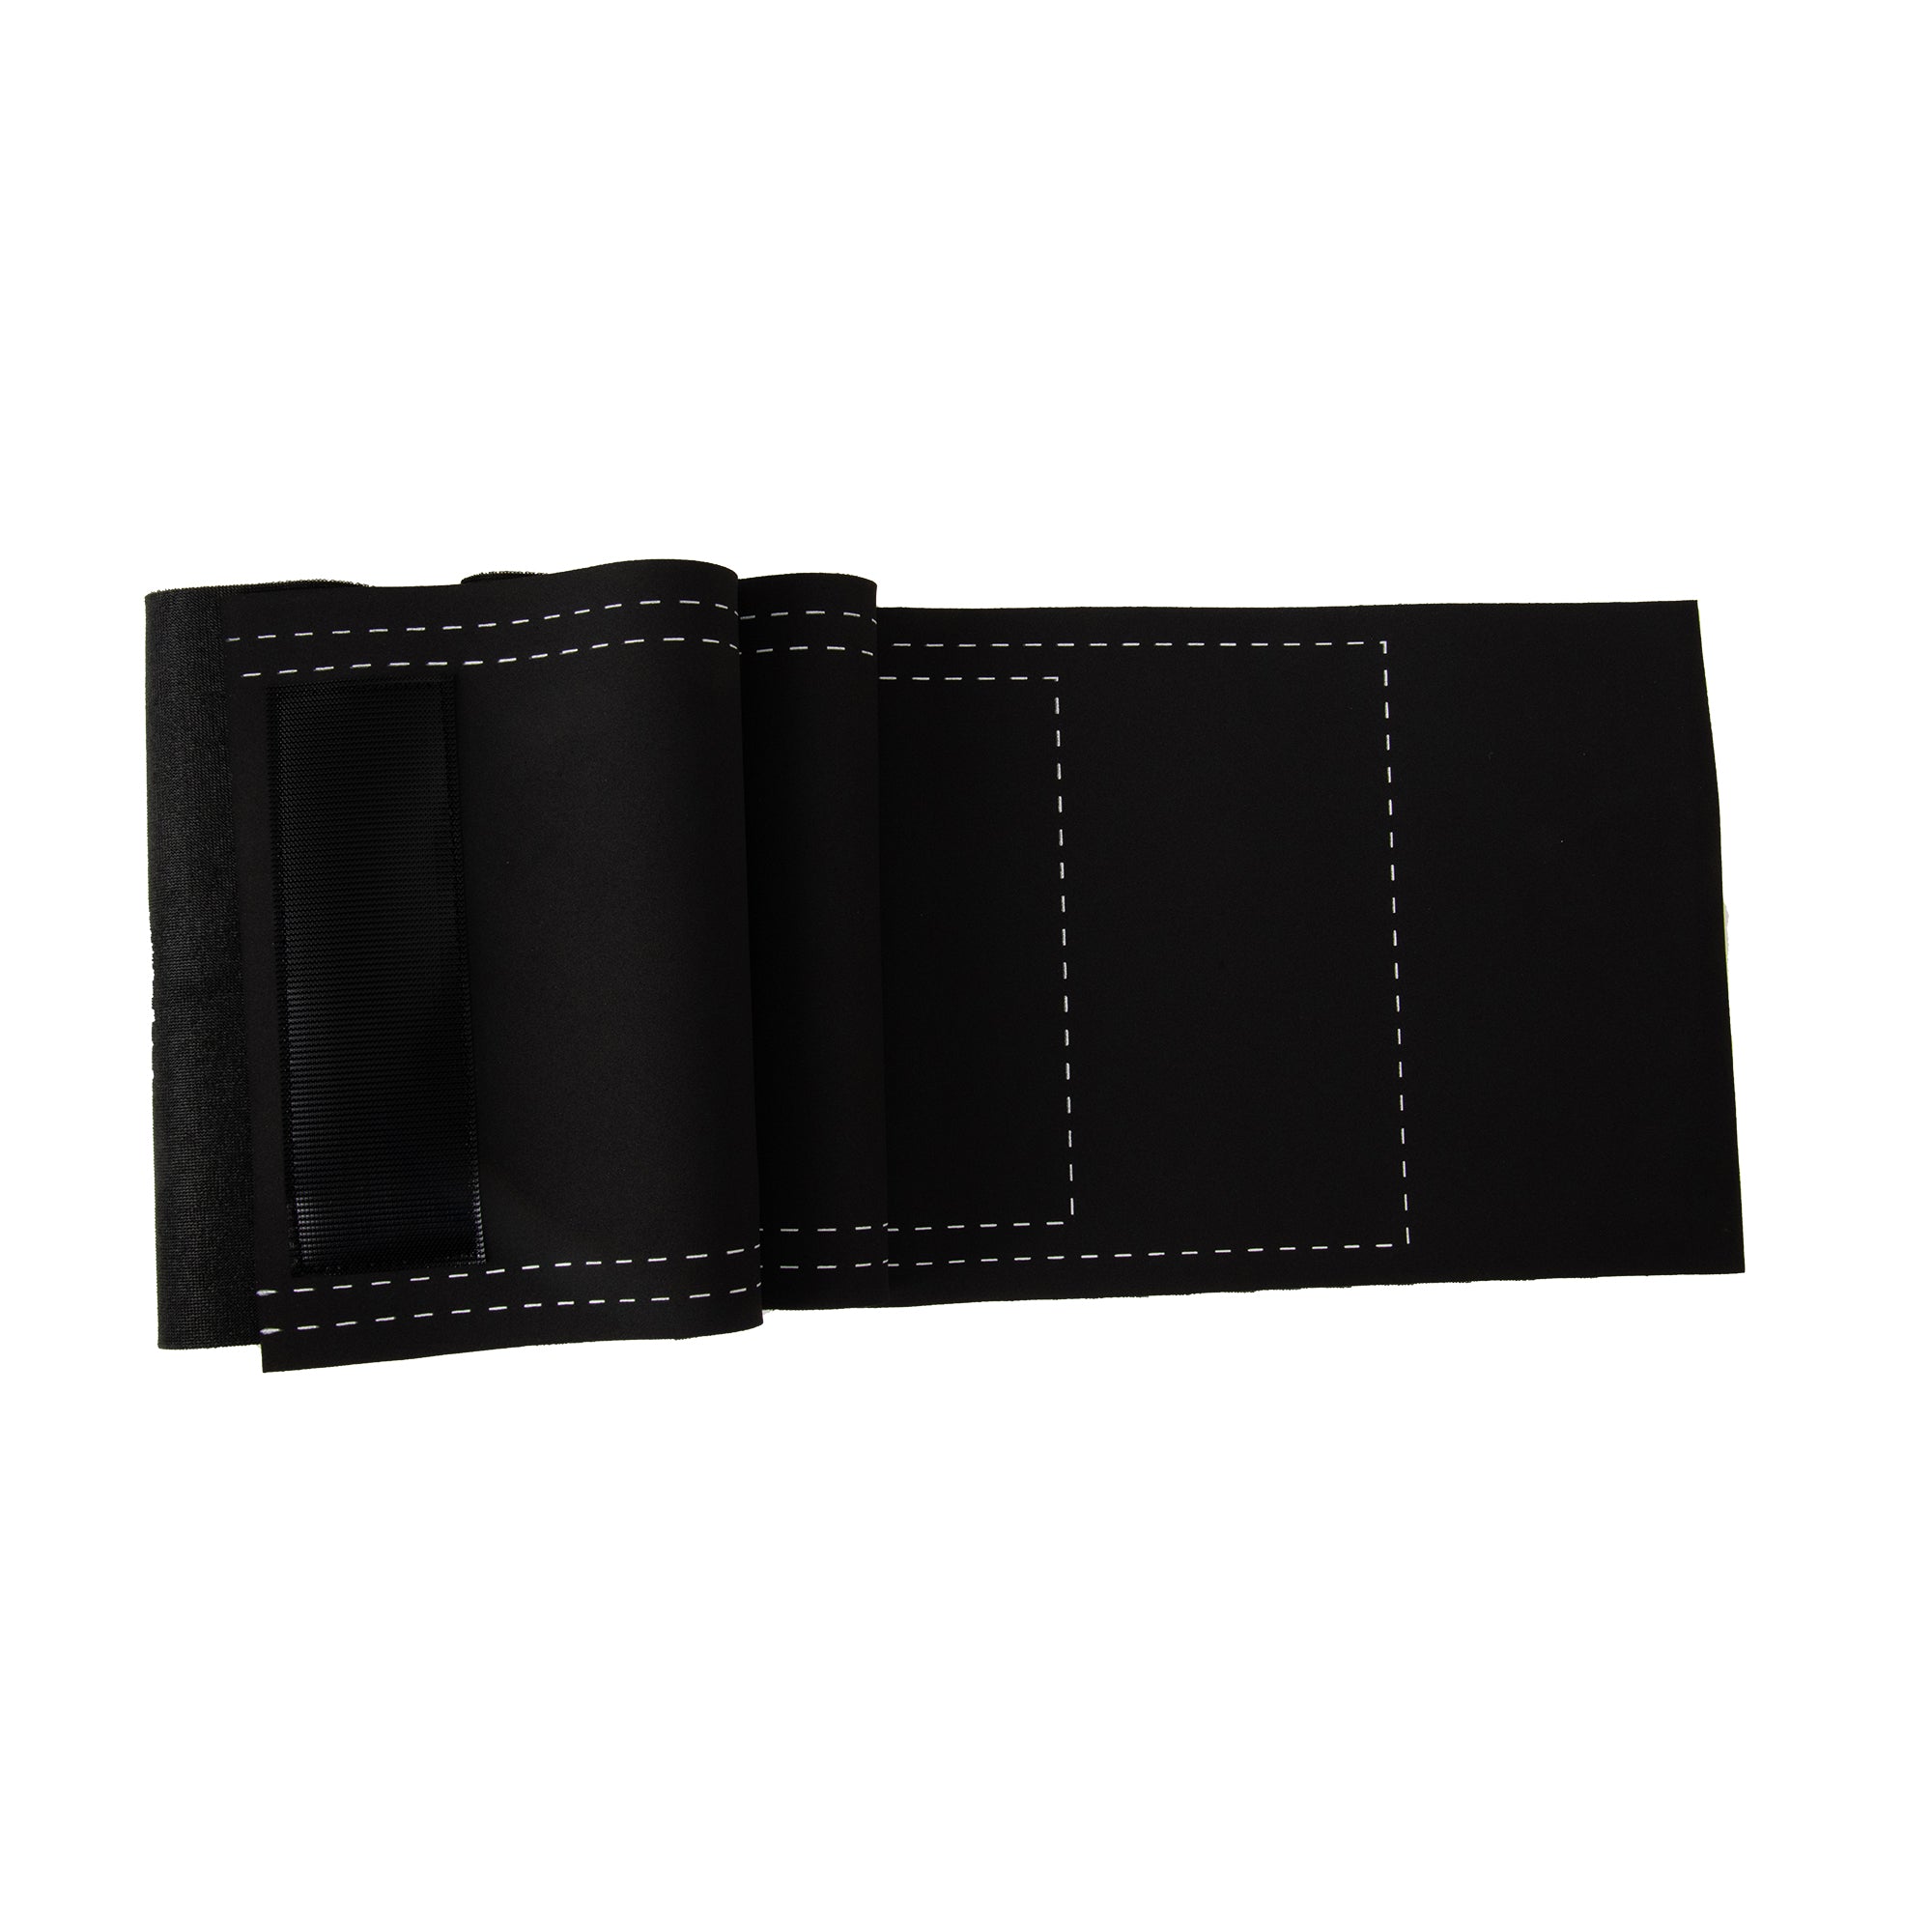 Leather Weight Belt – SM/MD – GoZone – GoZone Canada